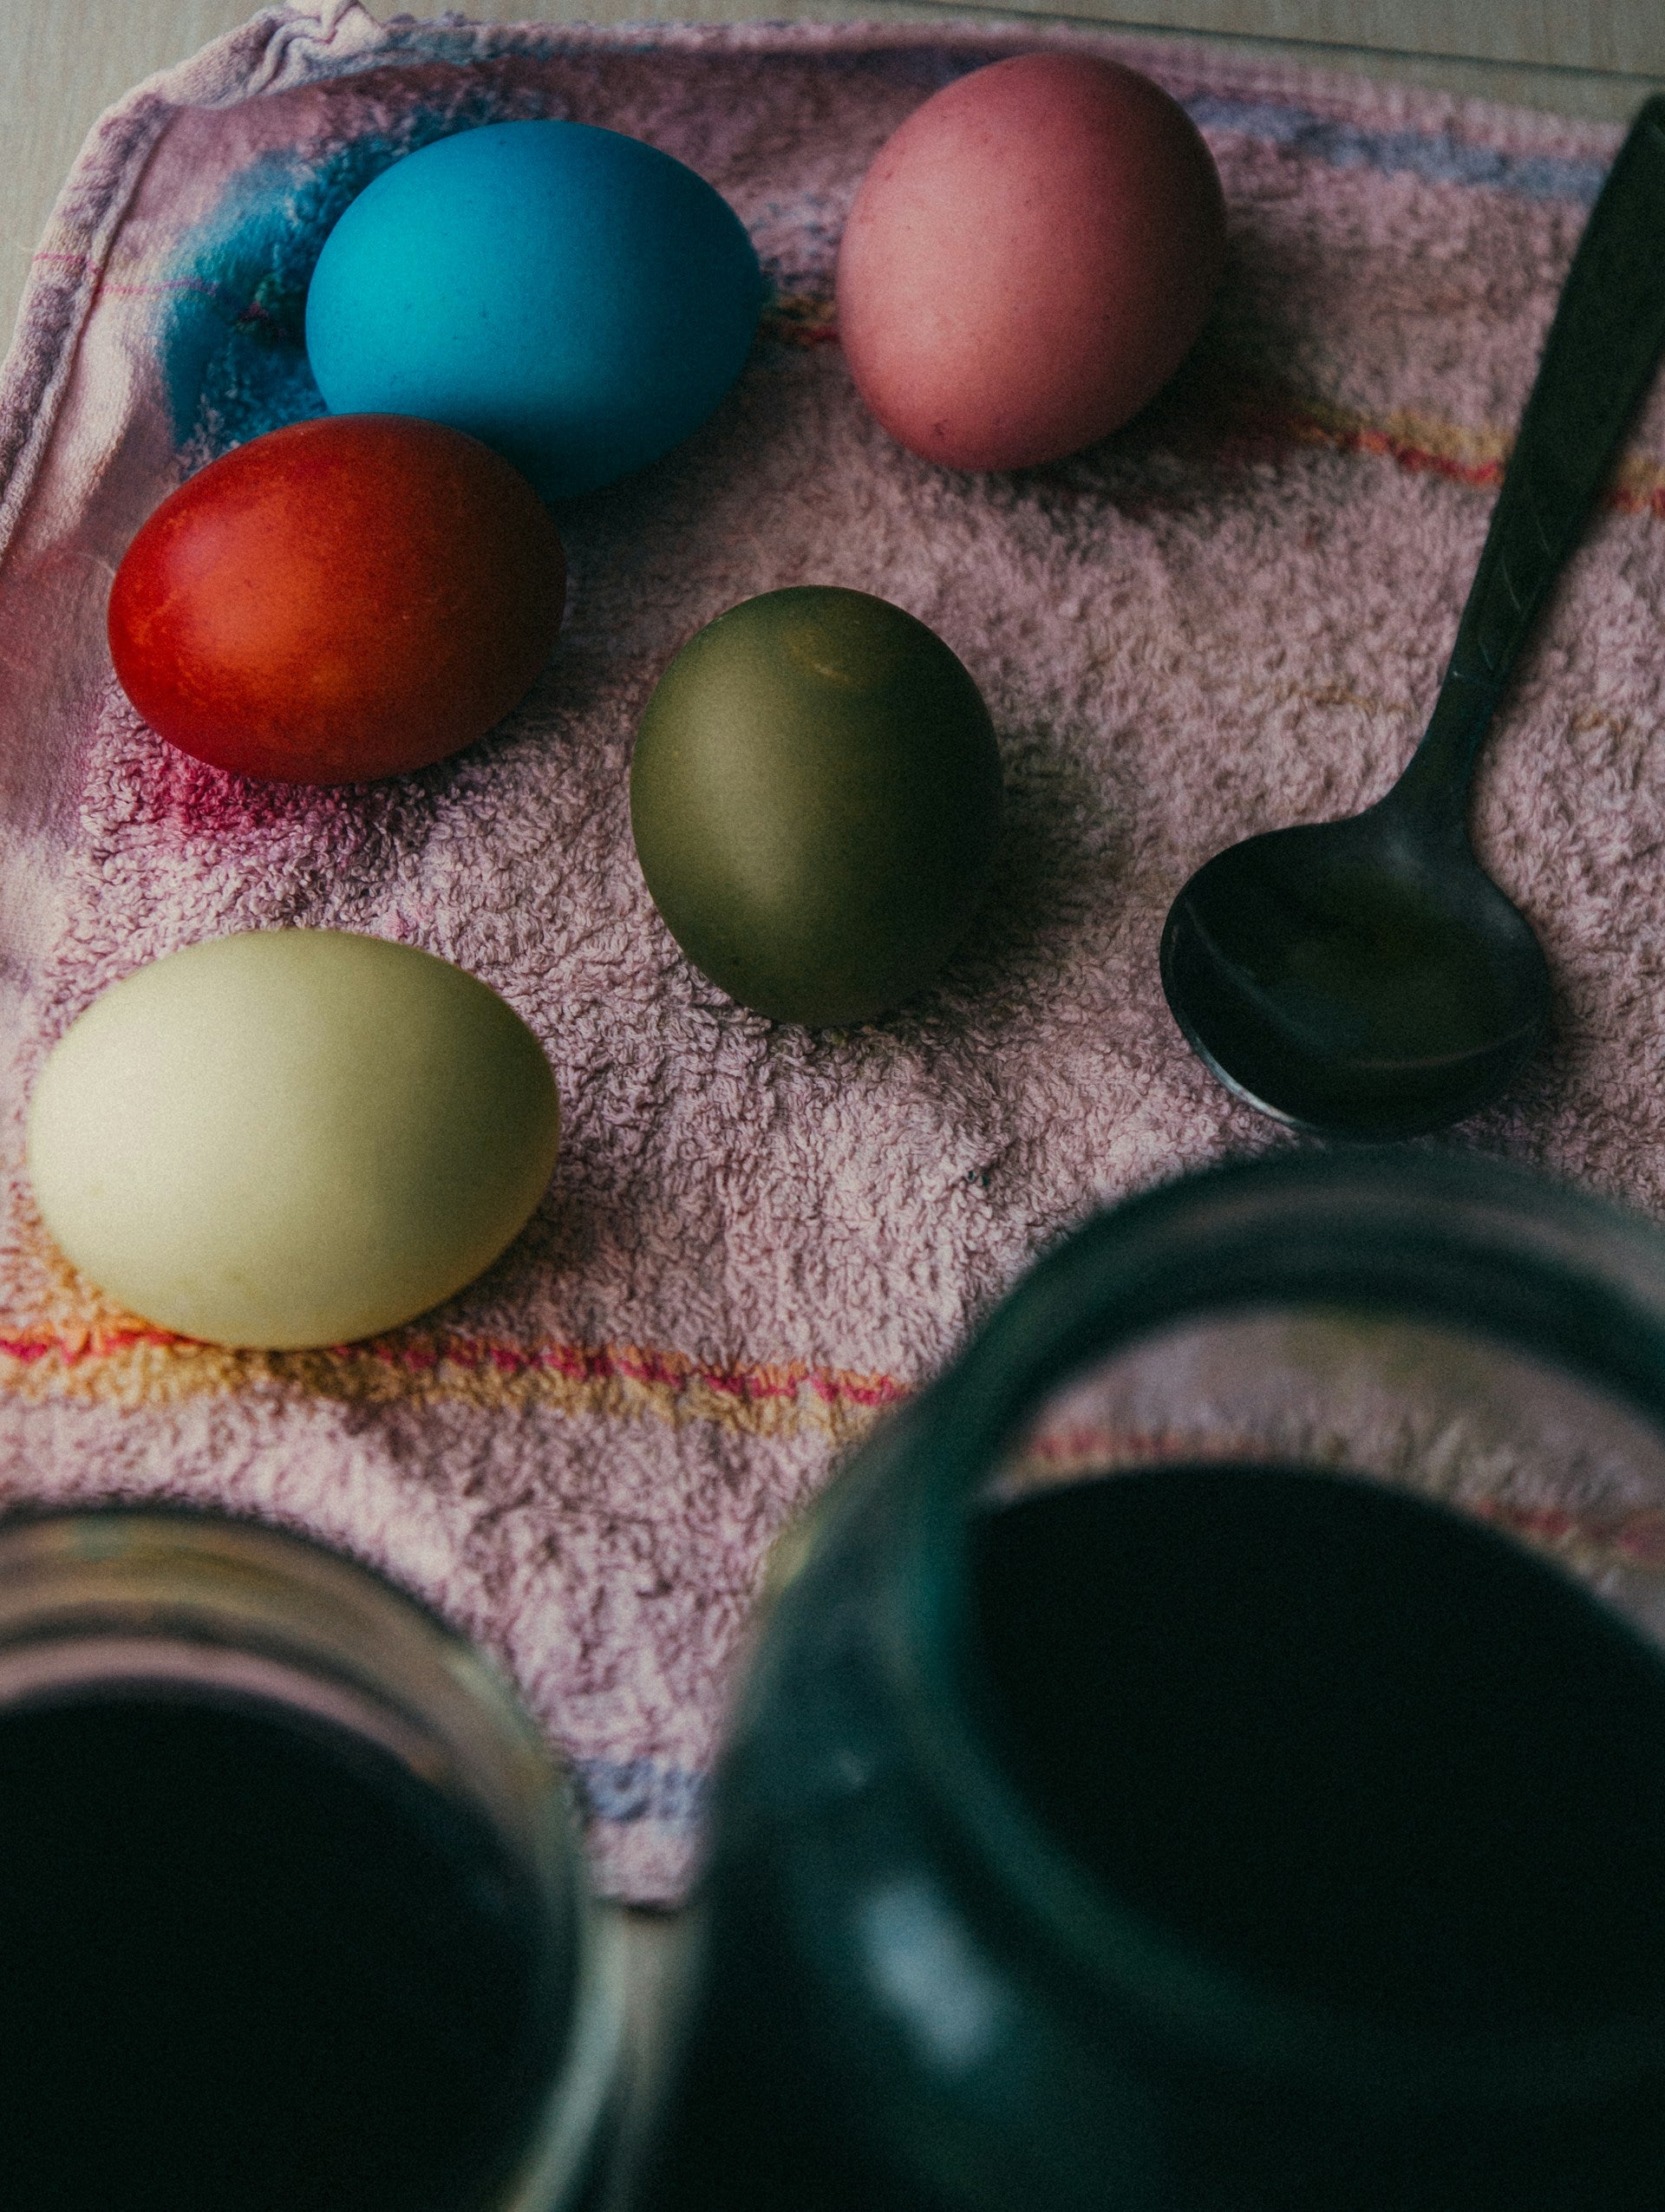 How Long Do Pickled Eggs Last In The Fridge? | Fridge.com